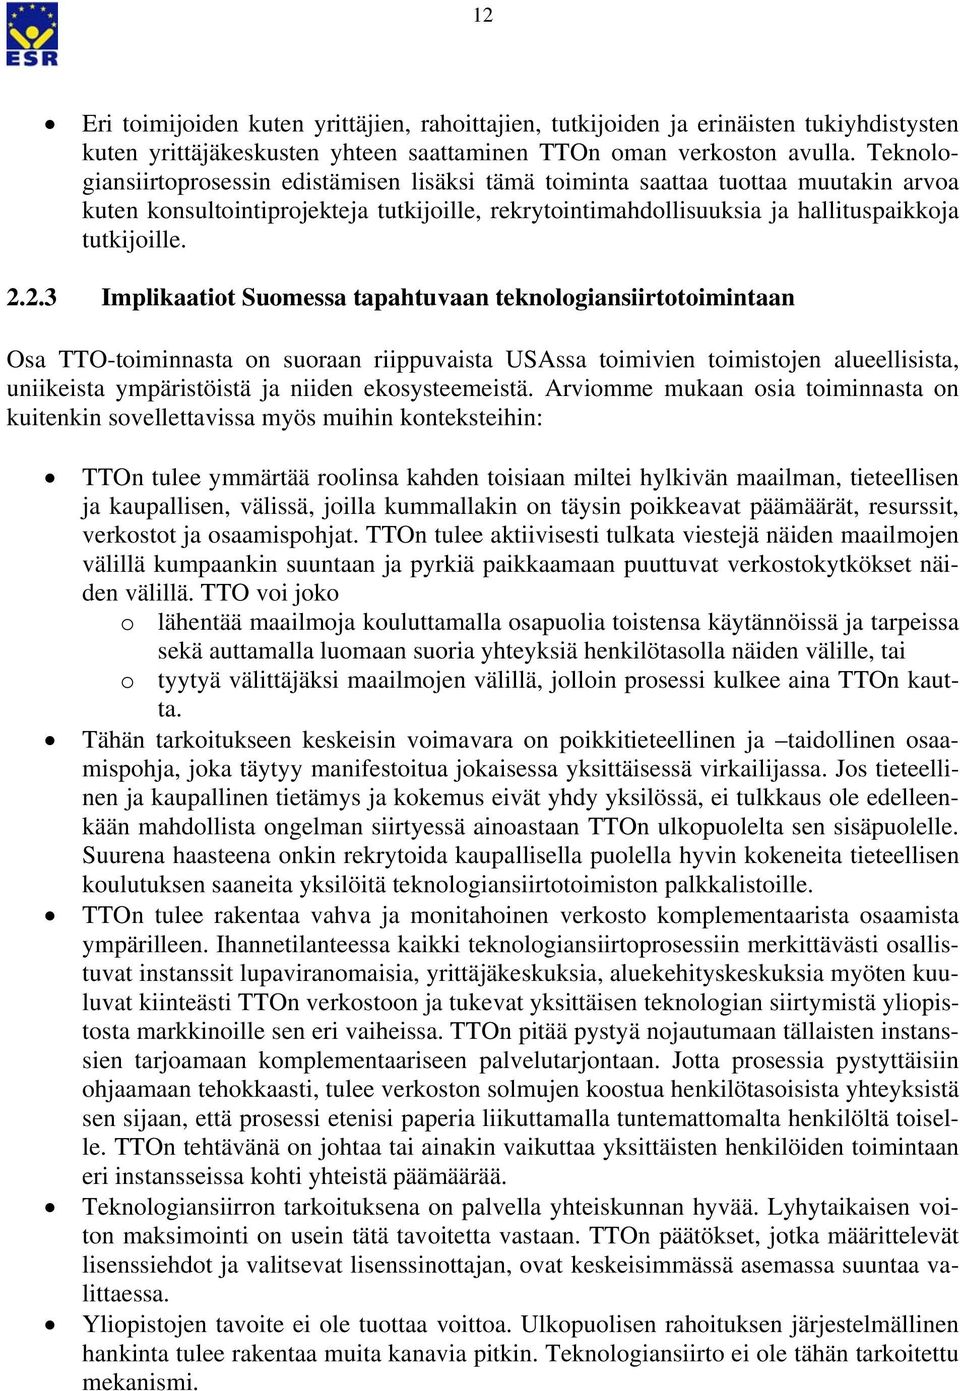 2.3 Implikaatiot Suomessa tapahtuvaan teknologiansiirtotoimintaan Osa TTO-toiminnasta on suoraan riippuvaista USAssa toimivien toimistojen alueellisista, uniikeista ympäristöistä ja niiden